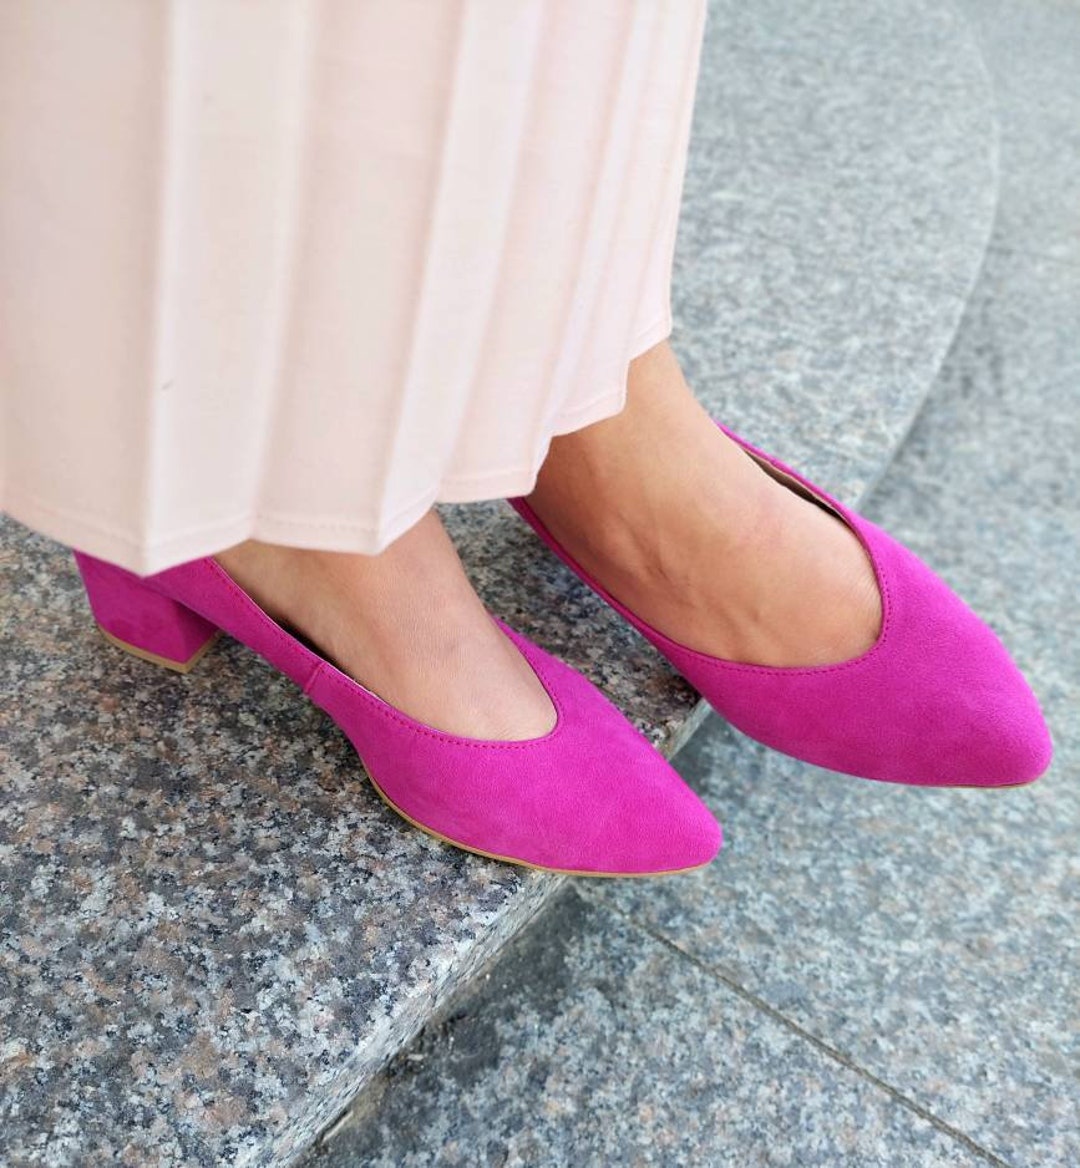 de mujer en zapatos fucsia tacones bajos - Etsy España